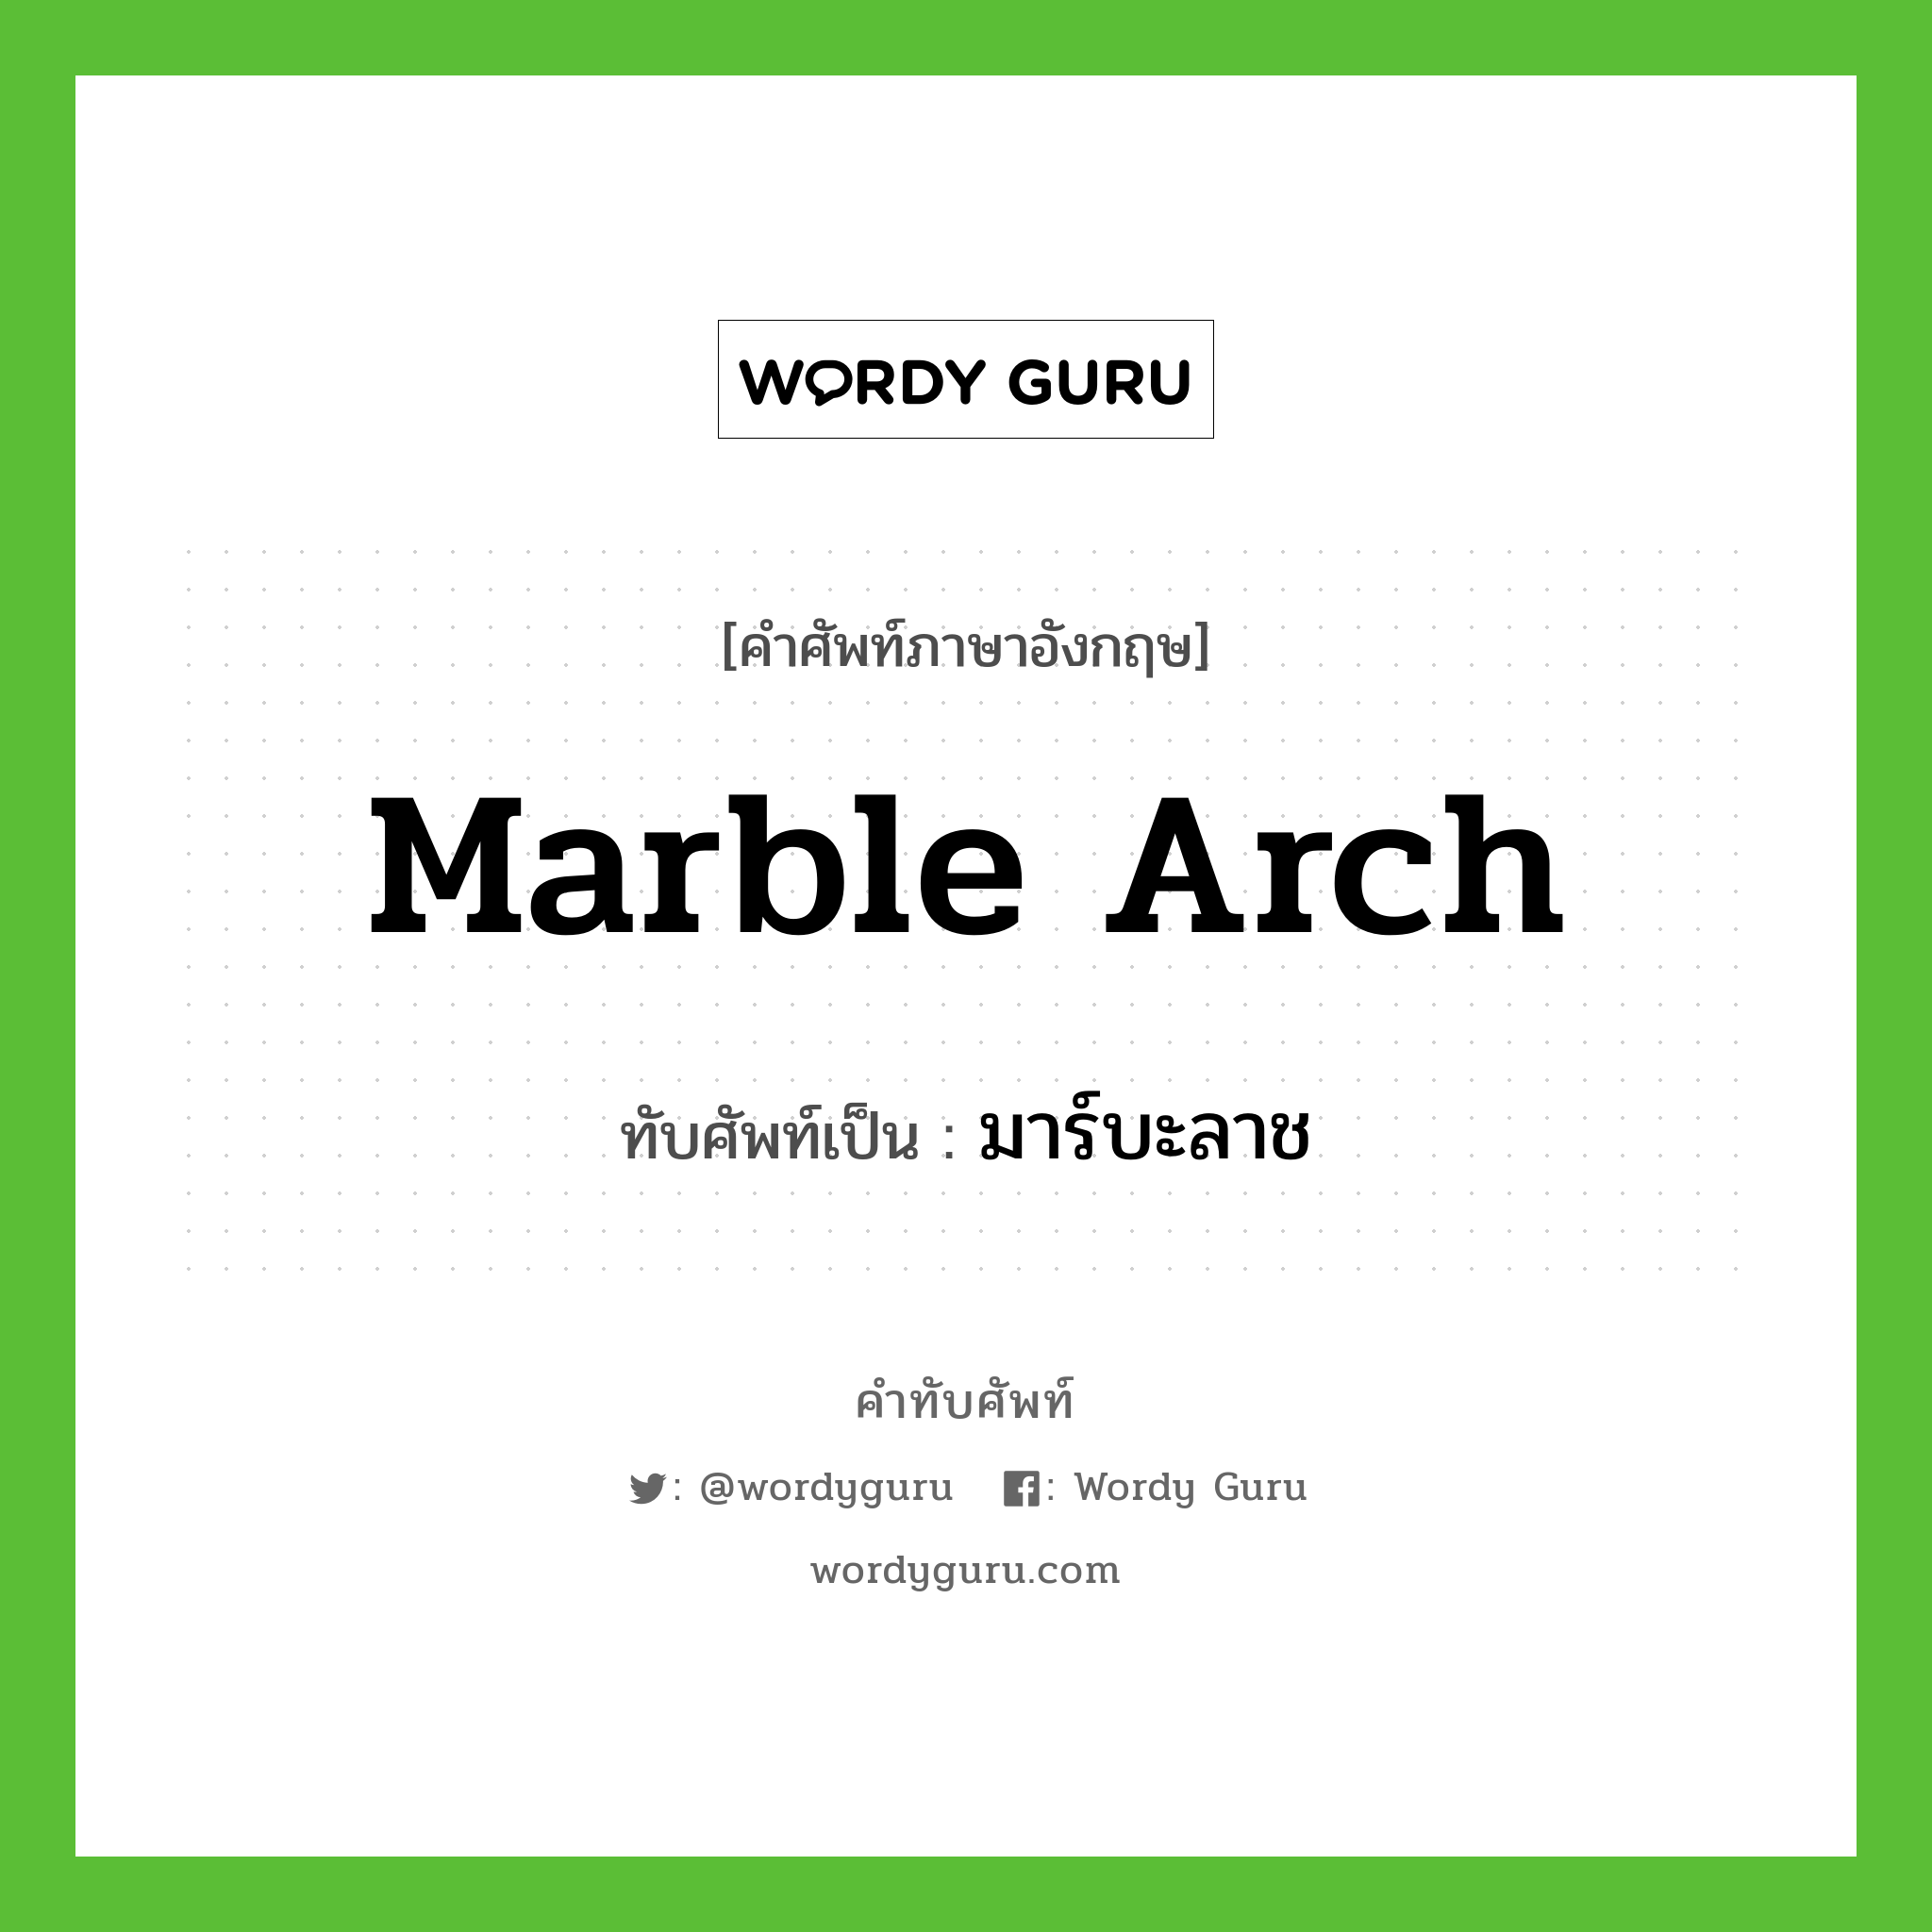 มาร์บะลาช เขียนอย่างไร?, คำศัพท์ภาษาอังกฤษ มาร์บะลาช ทับศัพท์เป็น Marble Arch